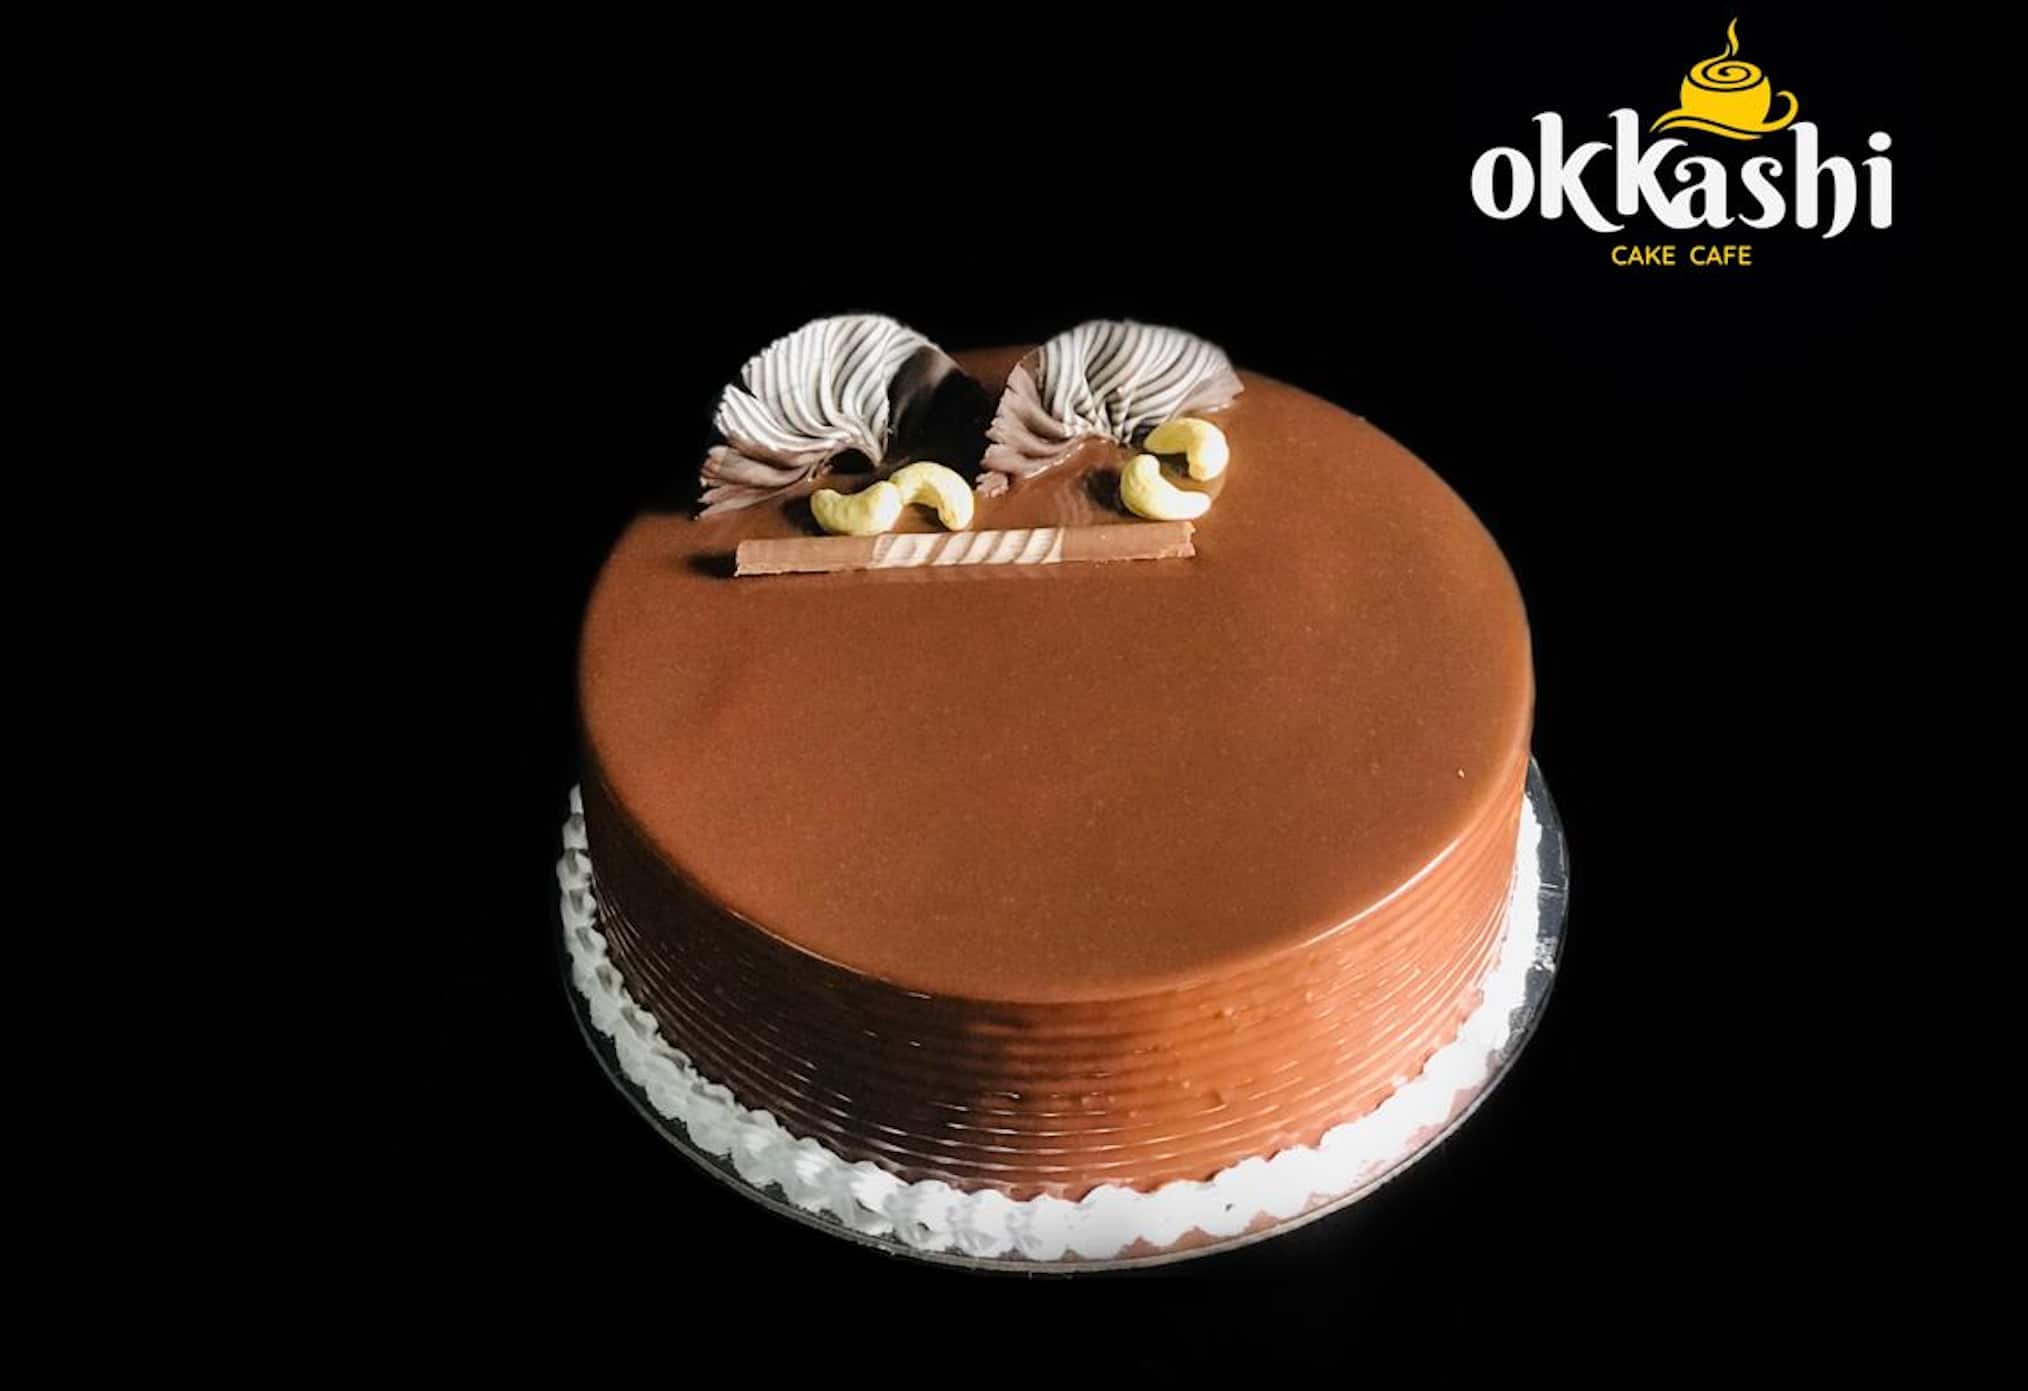 Okkashi Cake Cafe, Tirur Locality order online - Zomato